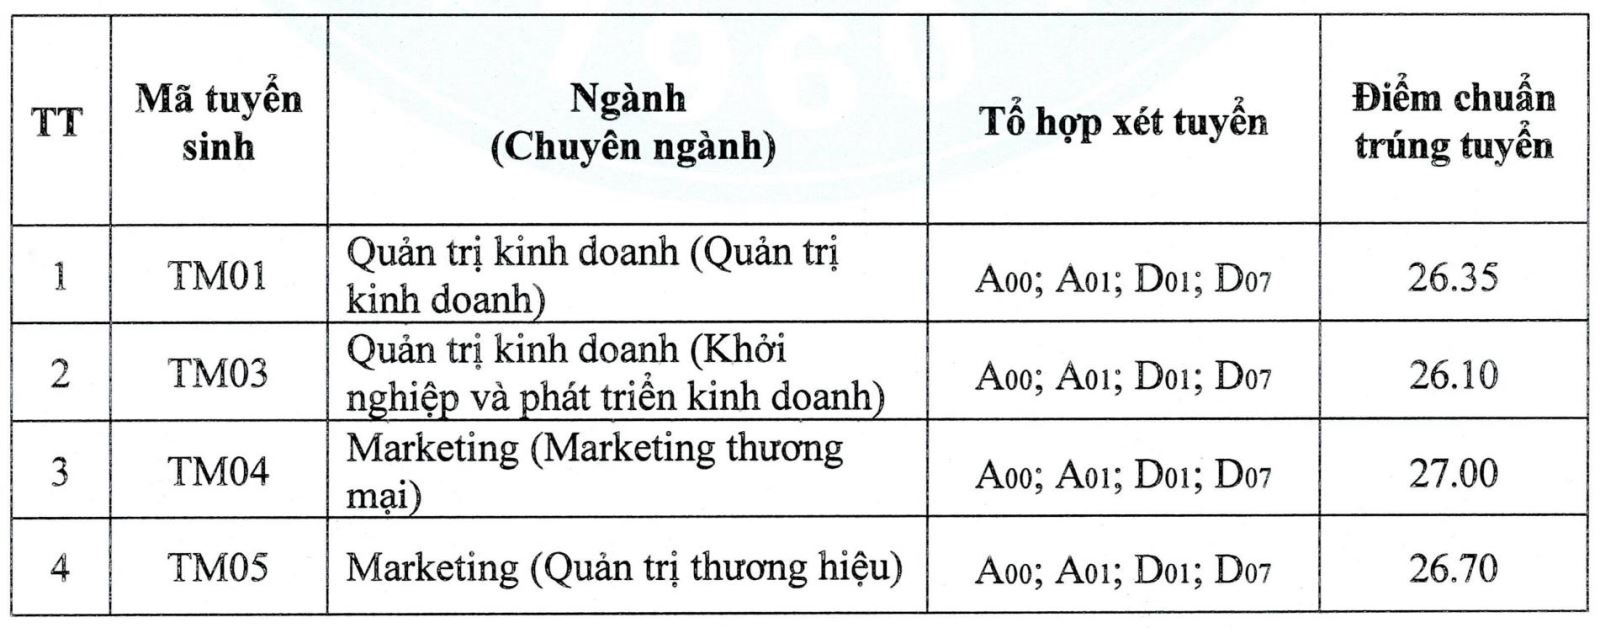 diem-chuan-cac-truong-dai-hoc-o-ha-noi-49